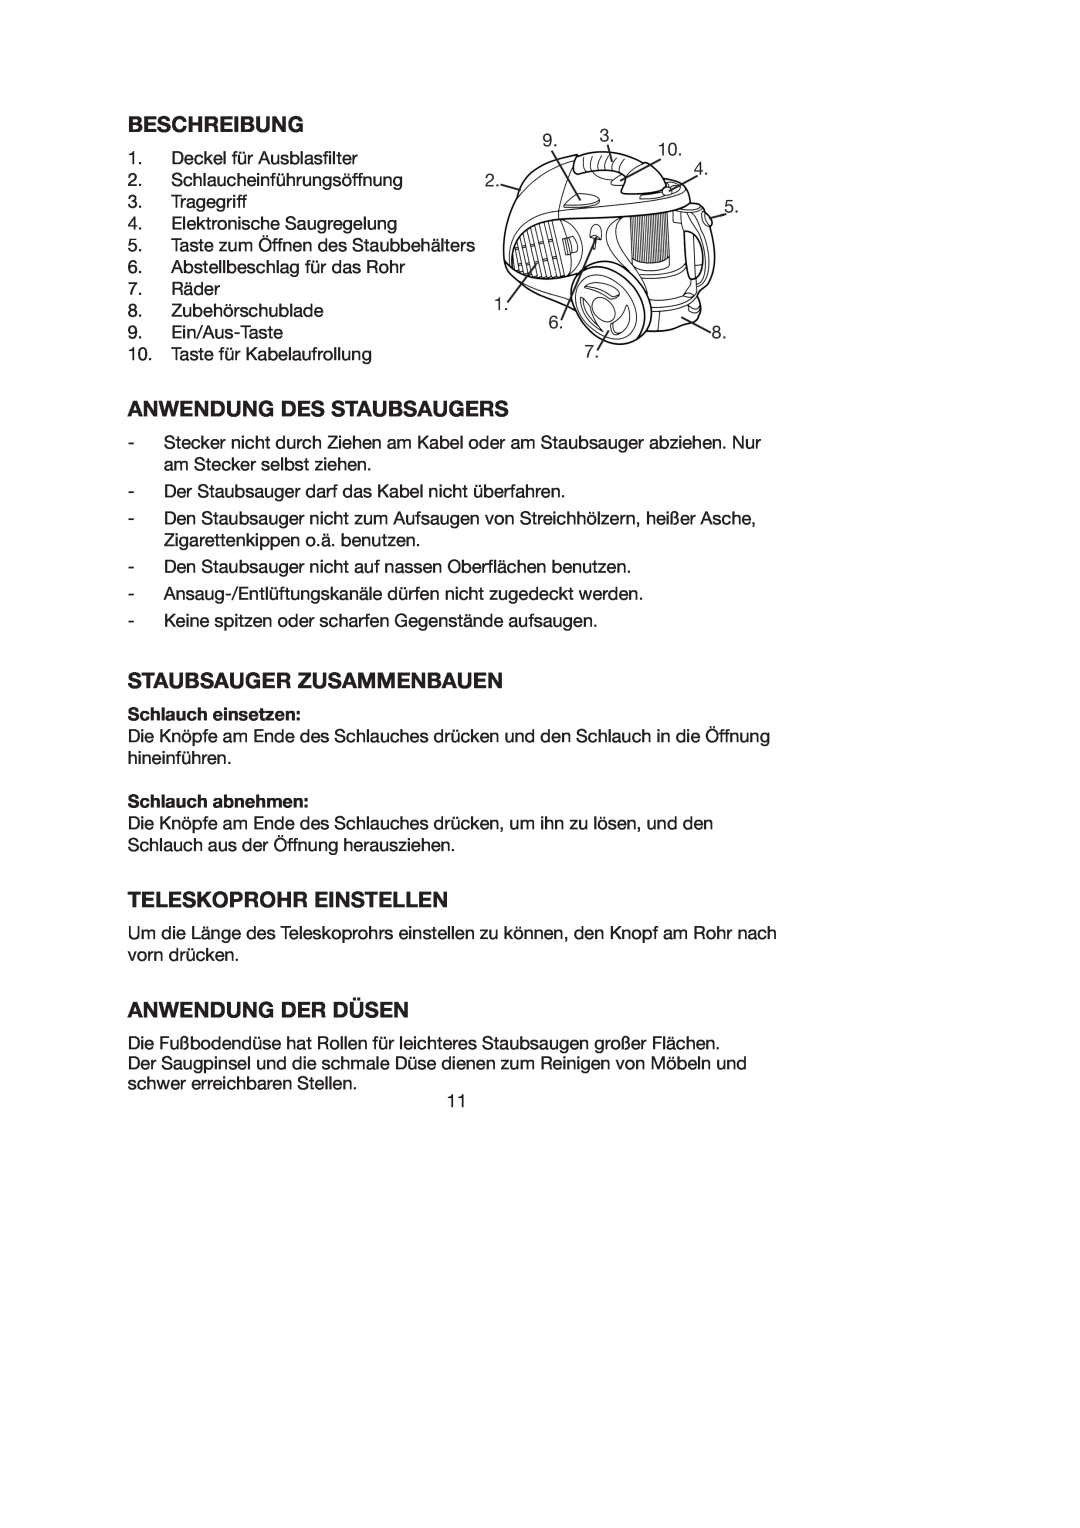 Melissa 740-095 manual Beschreibung, Anwendung Des Staubsaugers, Staubsauger Zusammenbauen, Teleskoprohr Einstellen 